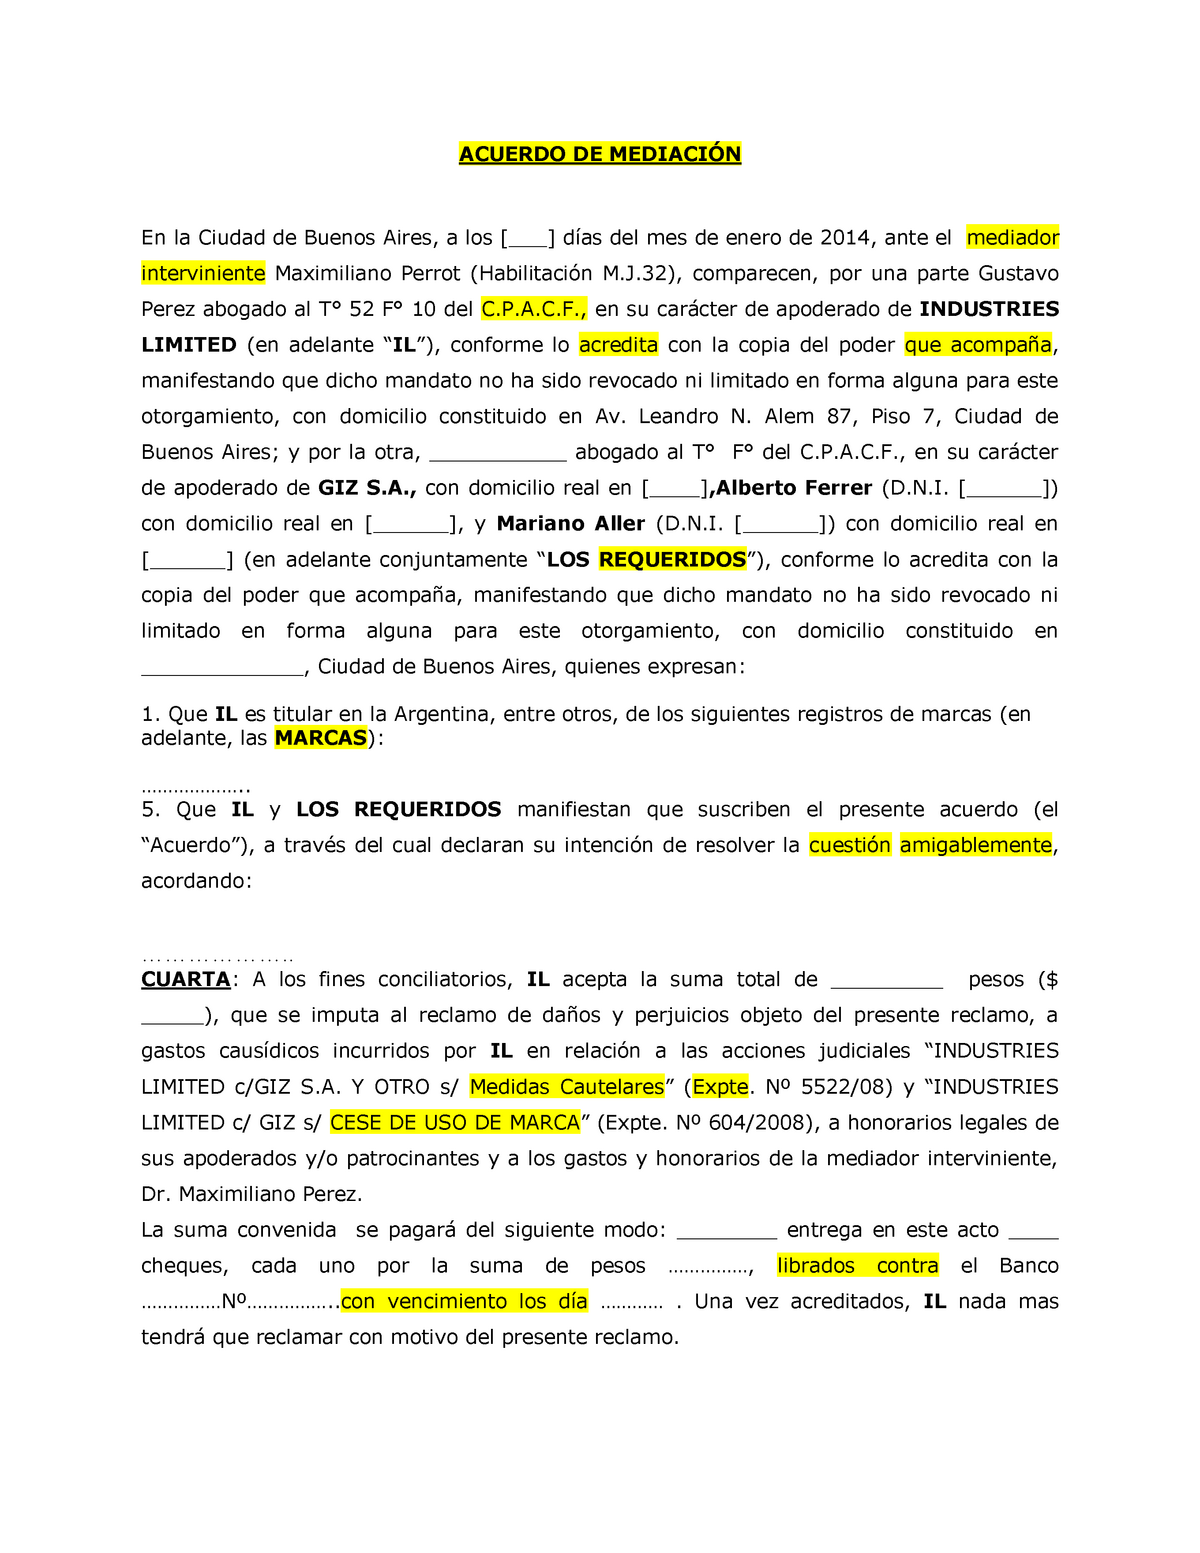 Acuerdo DE MediaciÓn Source - ACUERDO DE En la Ciudad de Buenos Aires ...